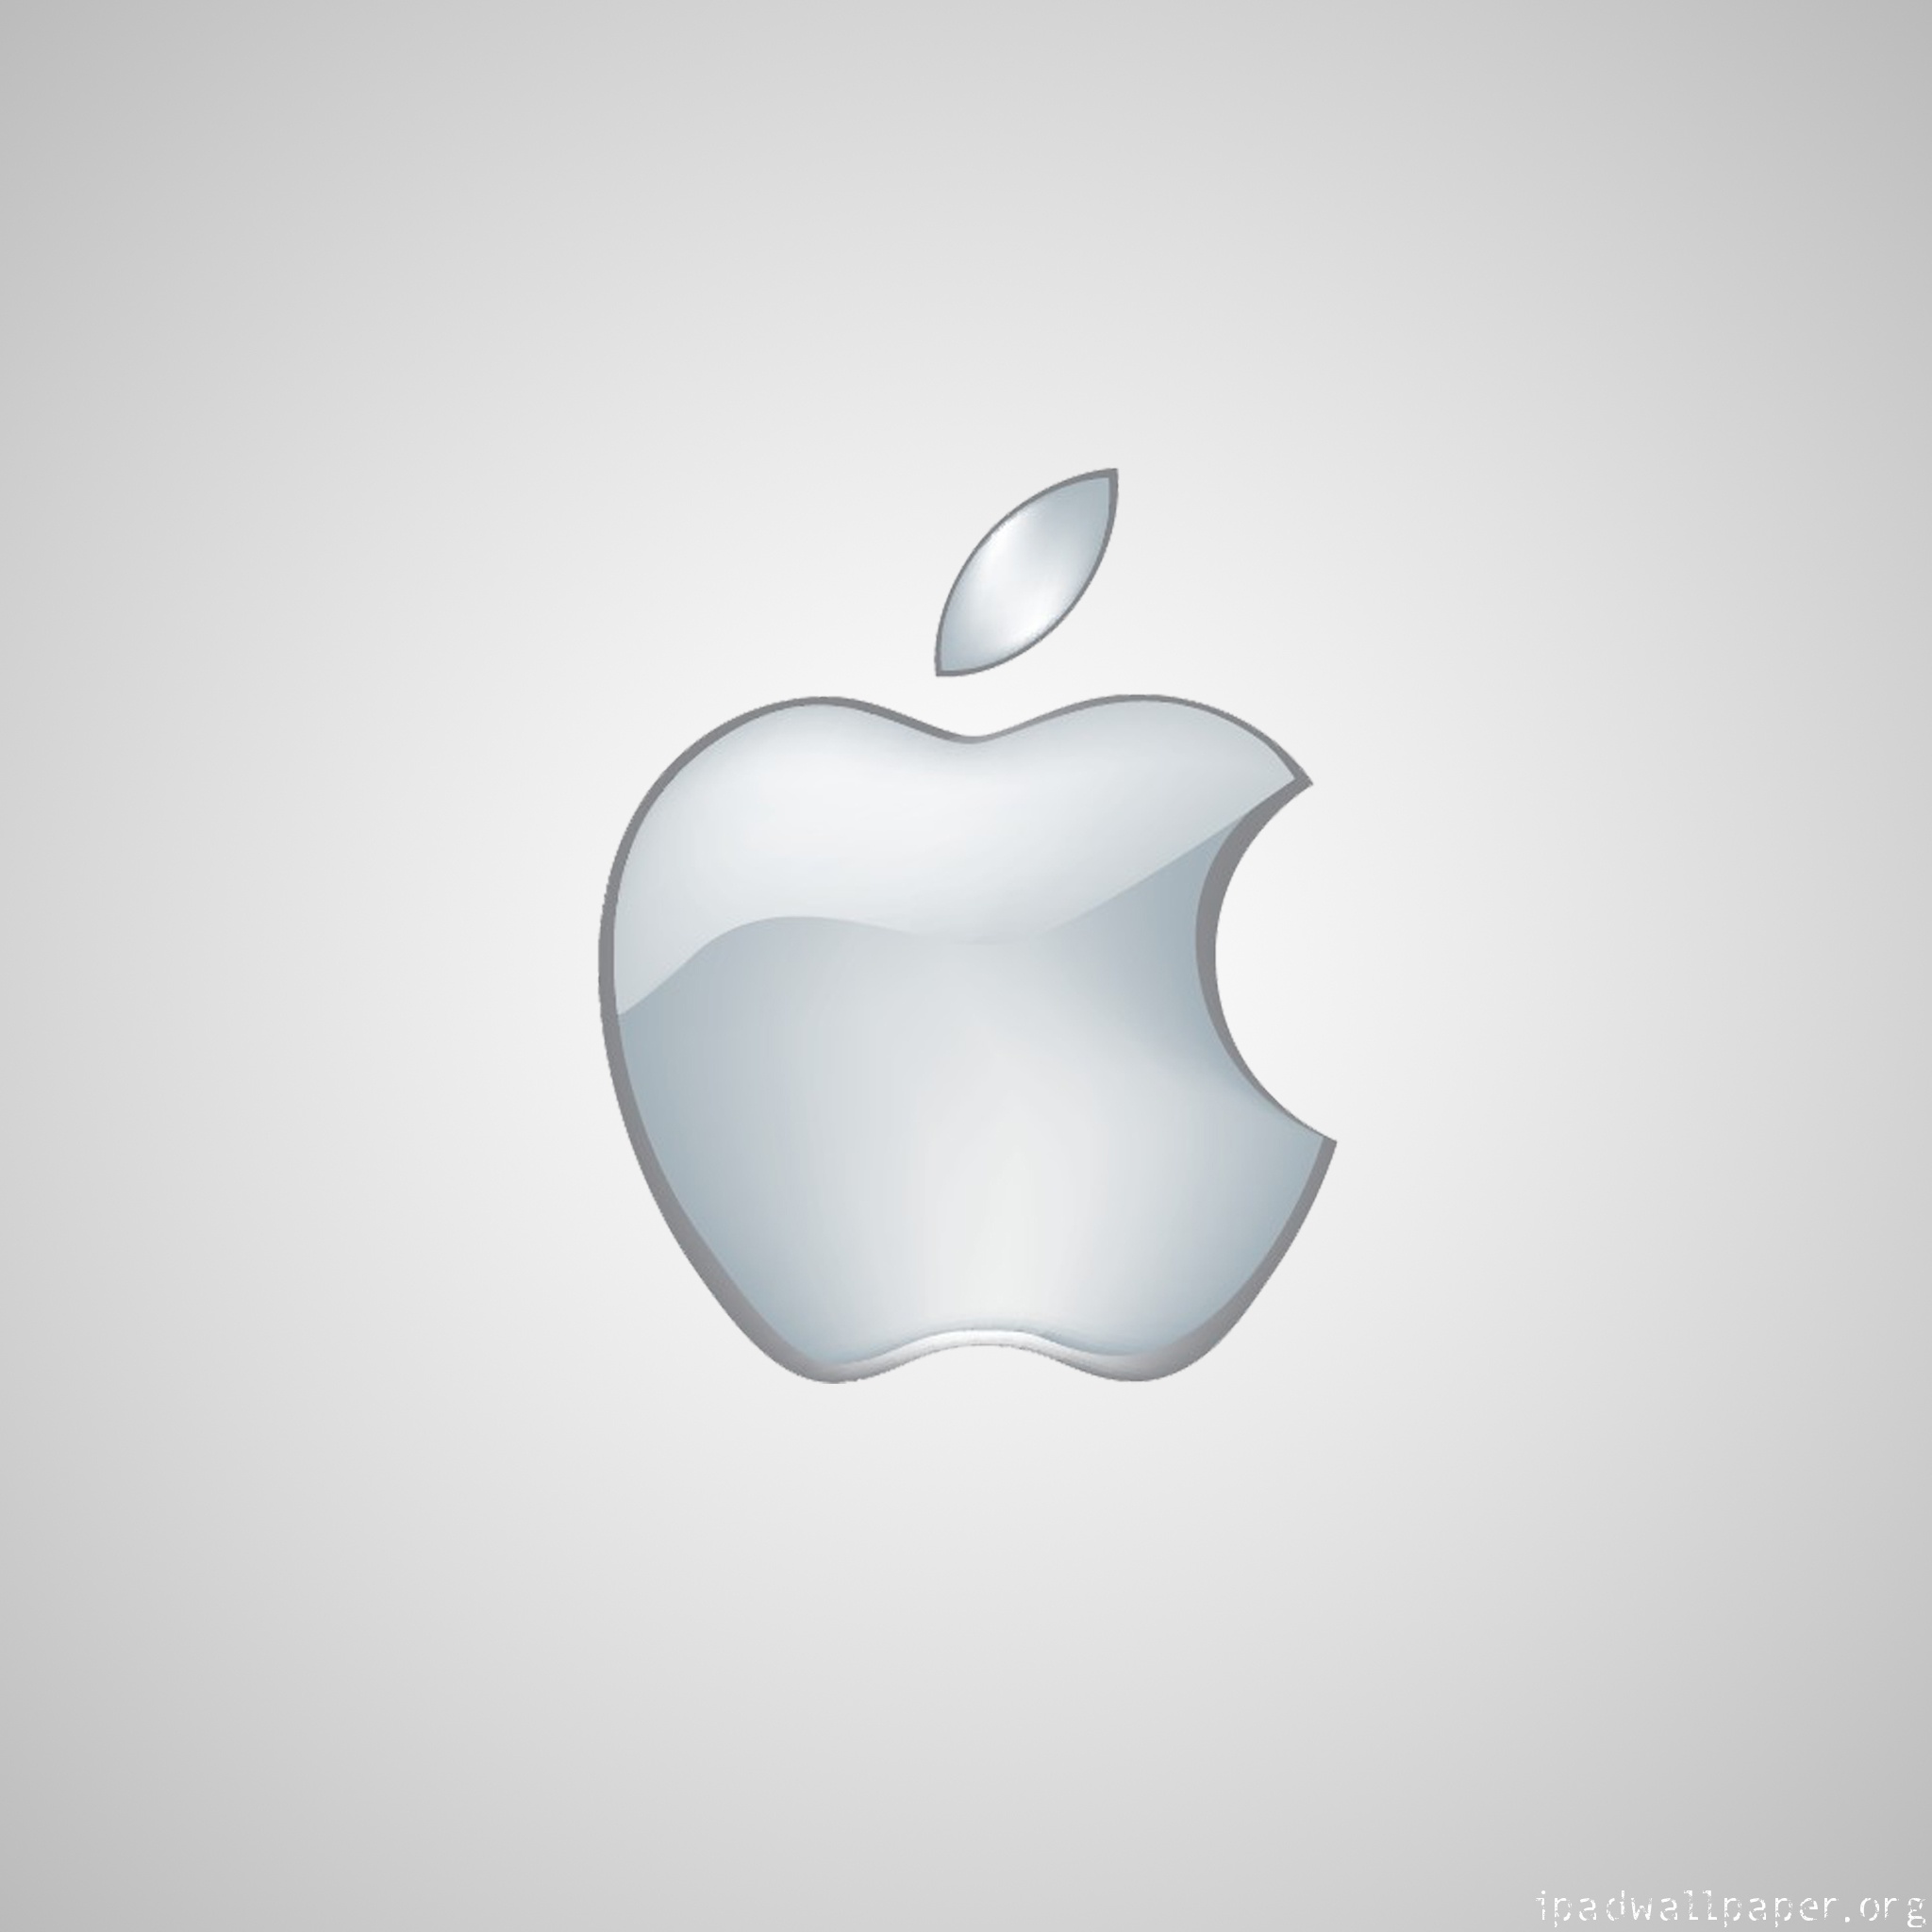 Appleのロゴ入り 無しもあり のシンプルなiphone用壁紙 噂のapple